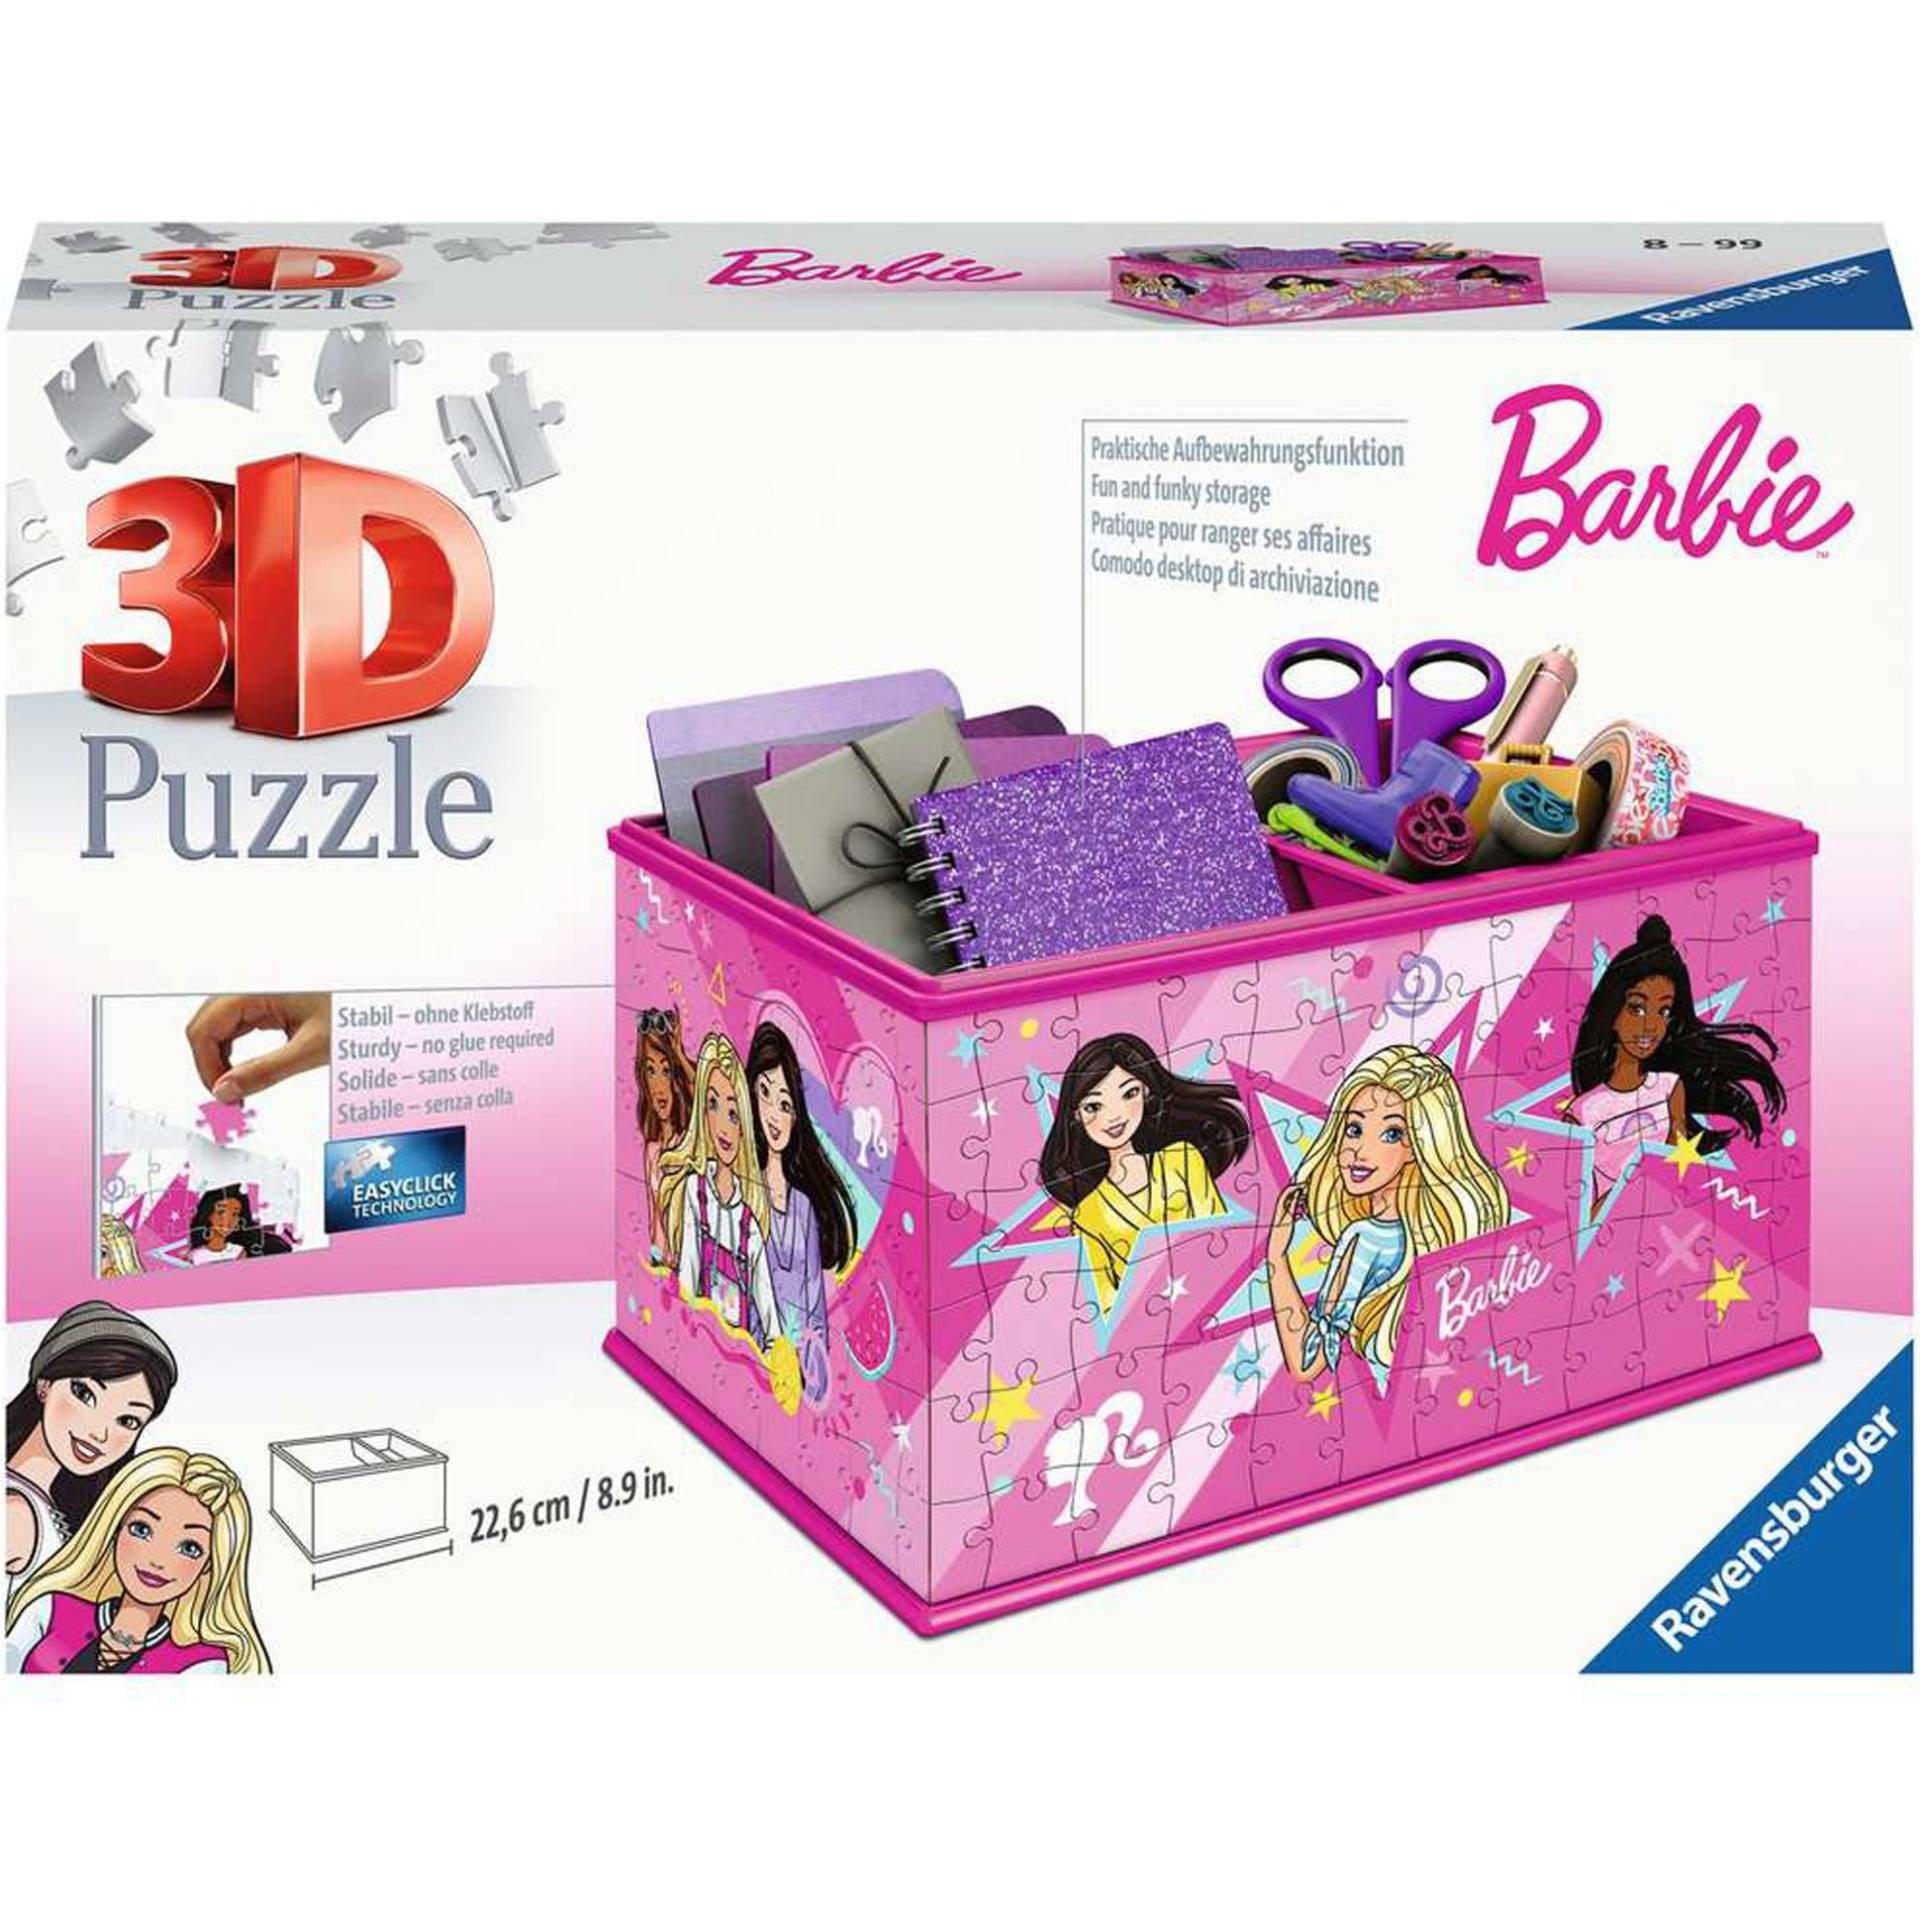 3D Puzzle Aufbewahrungsbox Barbie von Ravensburger